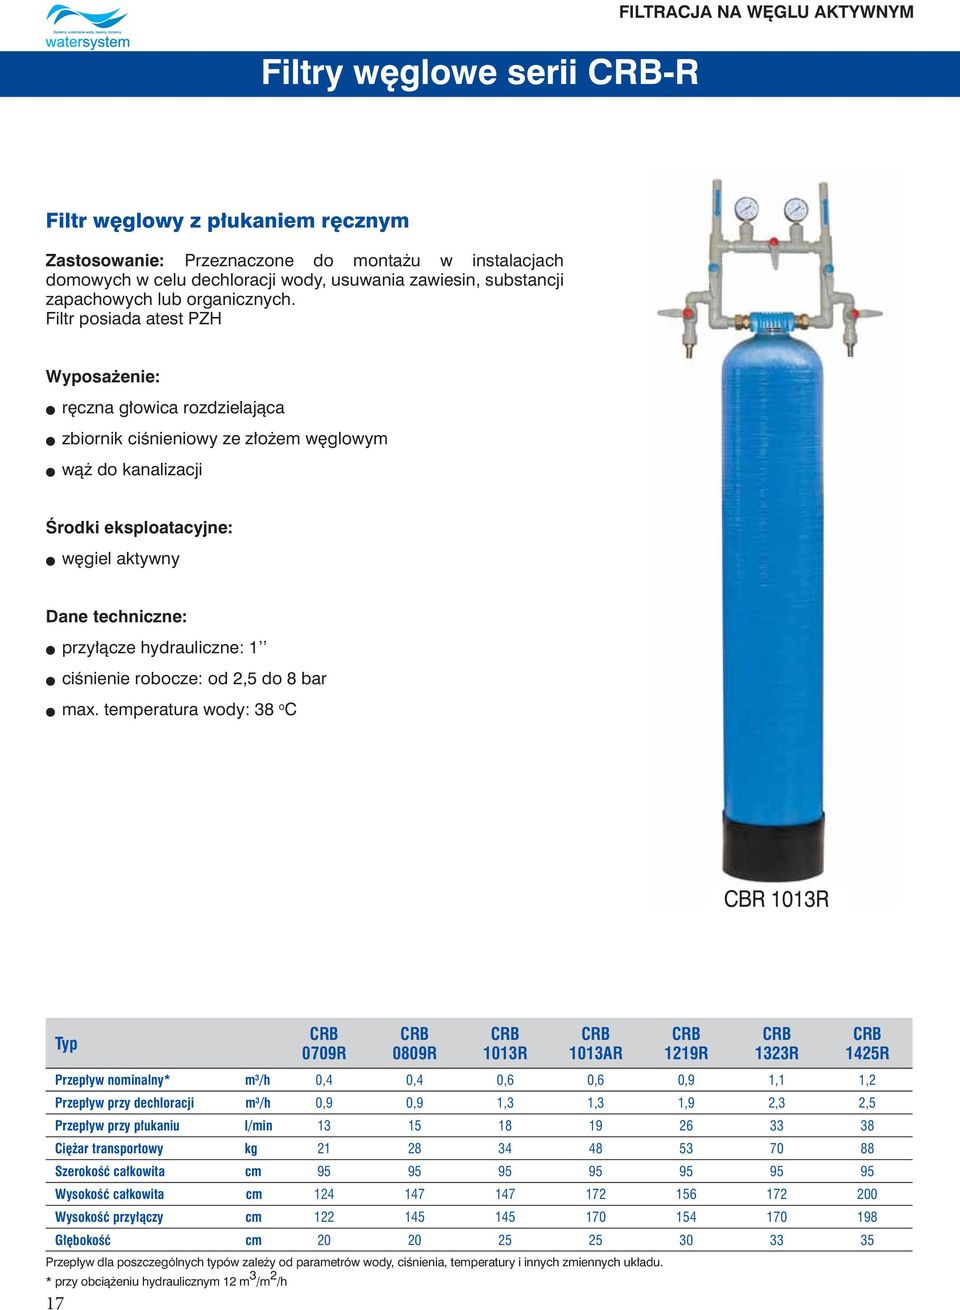 Filtr posiada atest PZH Wyposażenie: l ręczna głowica rozdzielająca l zbiornik ciśnieniowy ze złożem węglowym l wąż do kanalizacji Środki eksploatacyjne: l węgiel aktywny l przyłącze hydrauliczne: 1